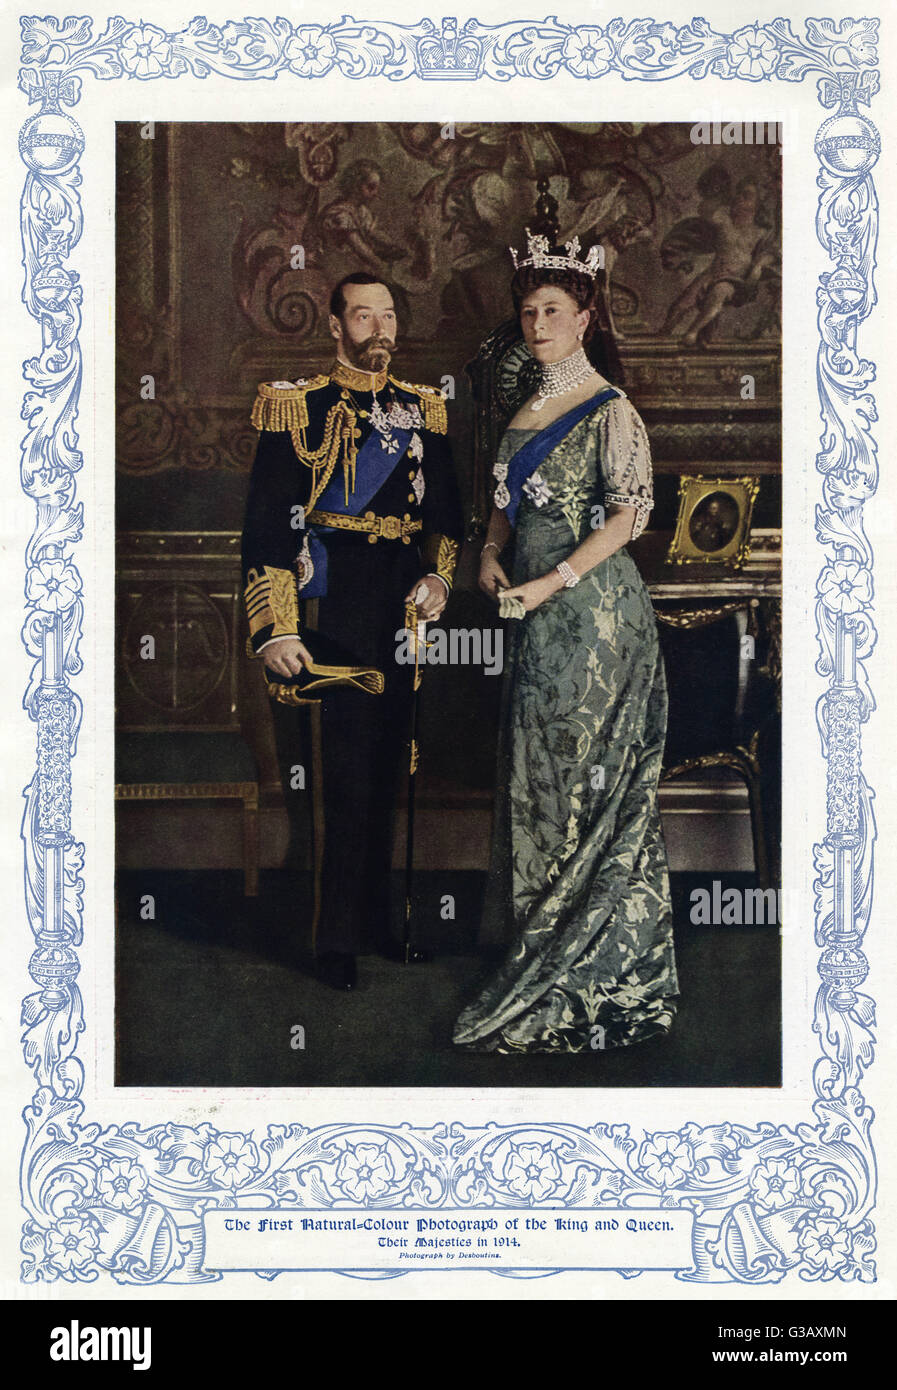 König George V (1865-1936) und seine Frau Königin Mary Gemahl im Buckingham Palace.  Queen Mary tragen eine trägt eine Krone mit dem Koh-i-Noor-Diamant in der Mitte Datum eingestellt: 1914 Stockfoto